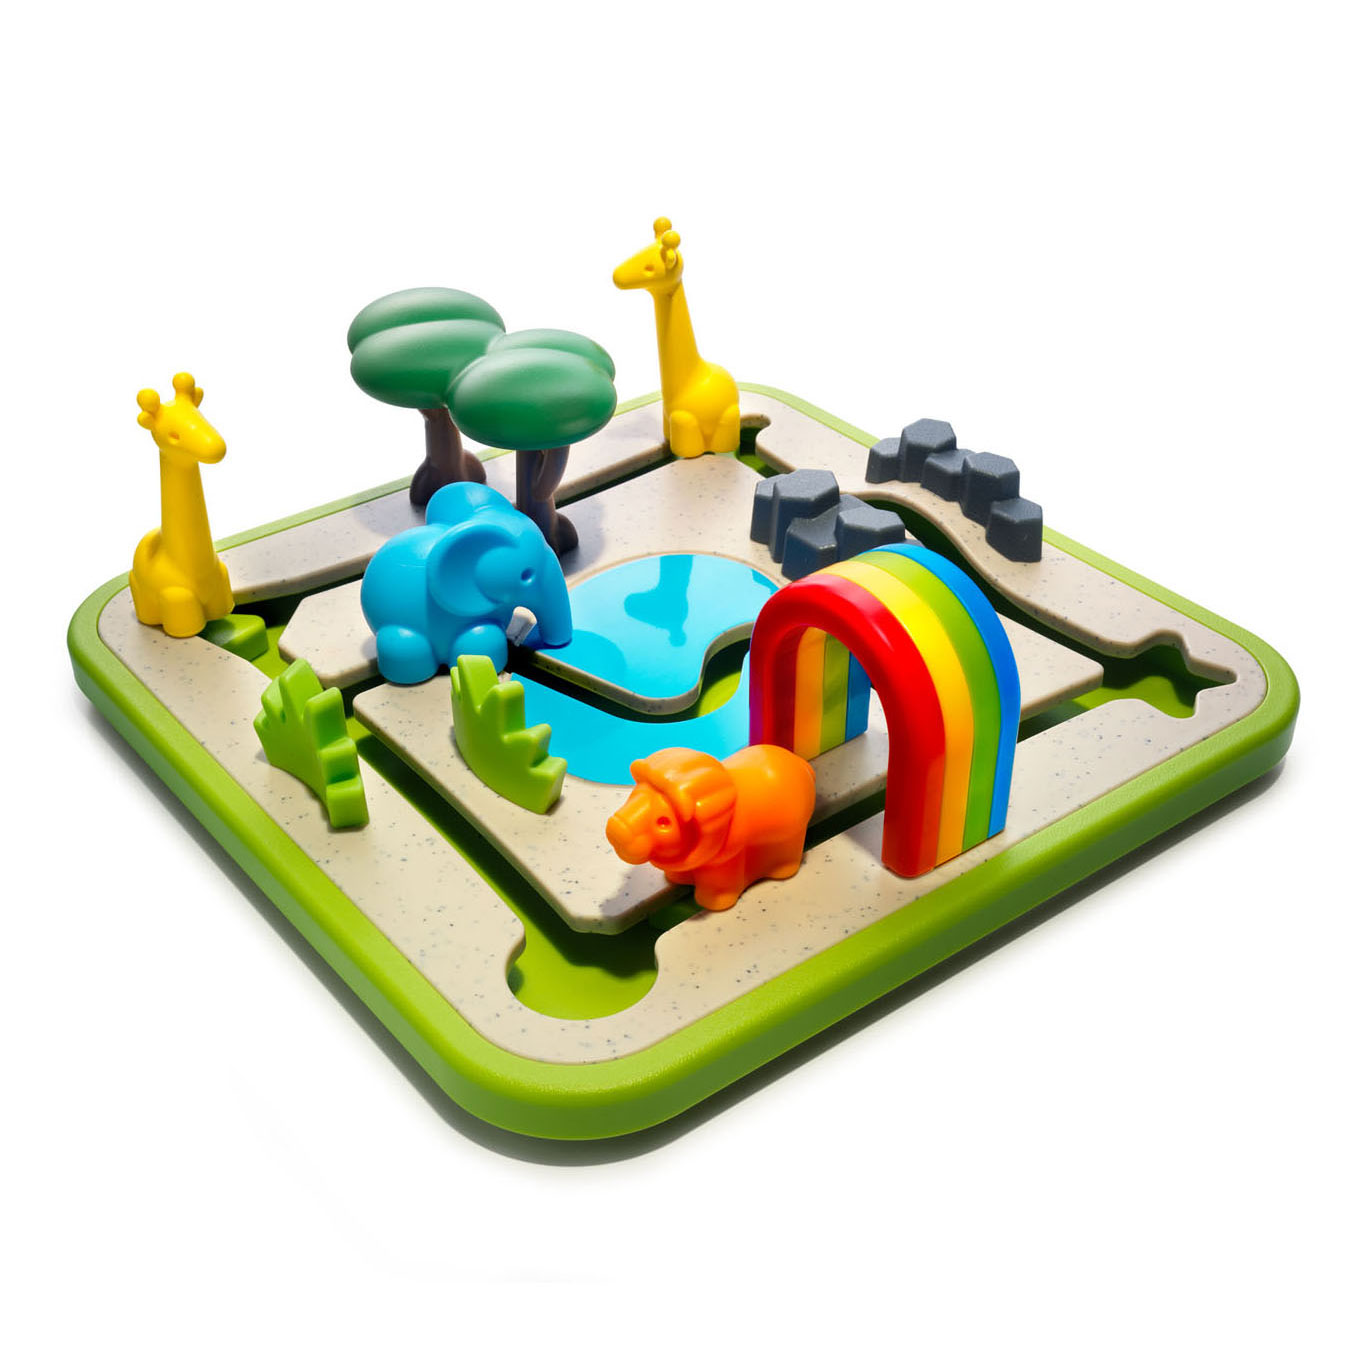 SmartGames Safari Park Junior Lernspiel für Kinder im Vorschulalter